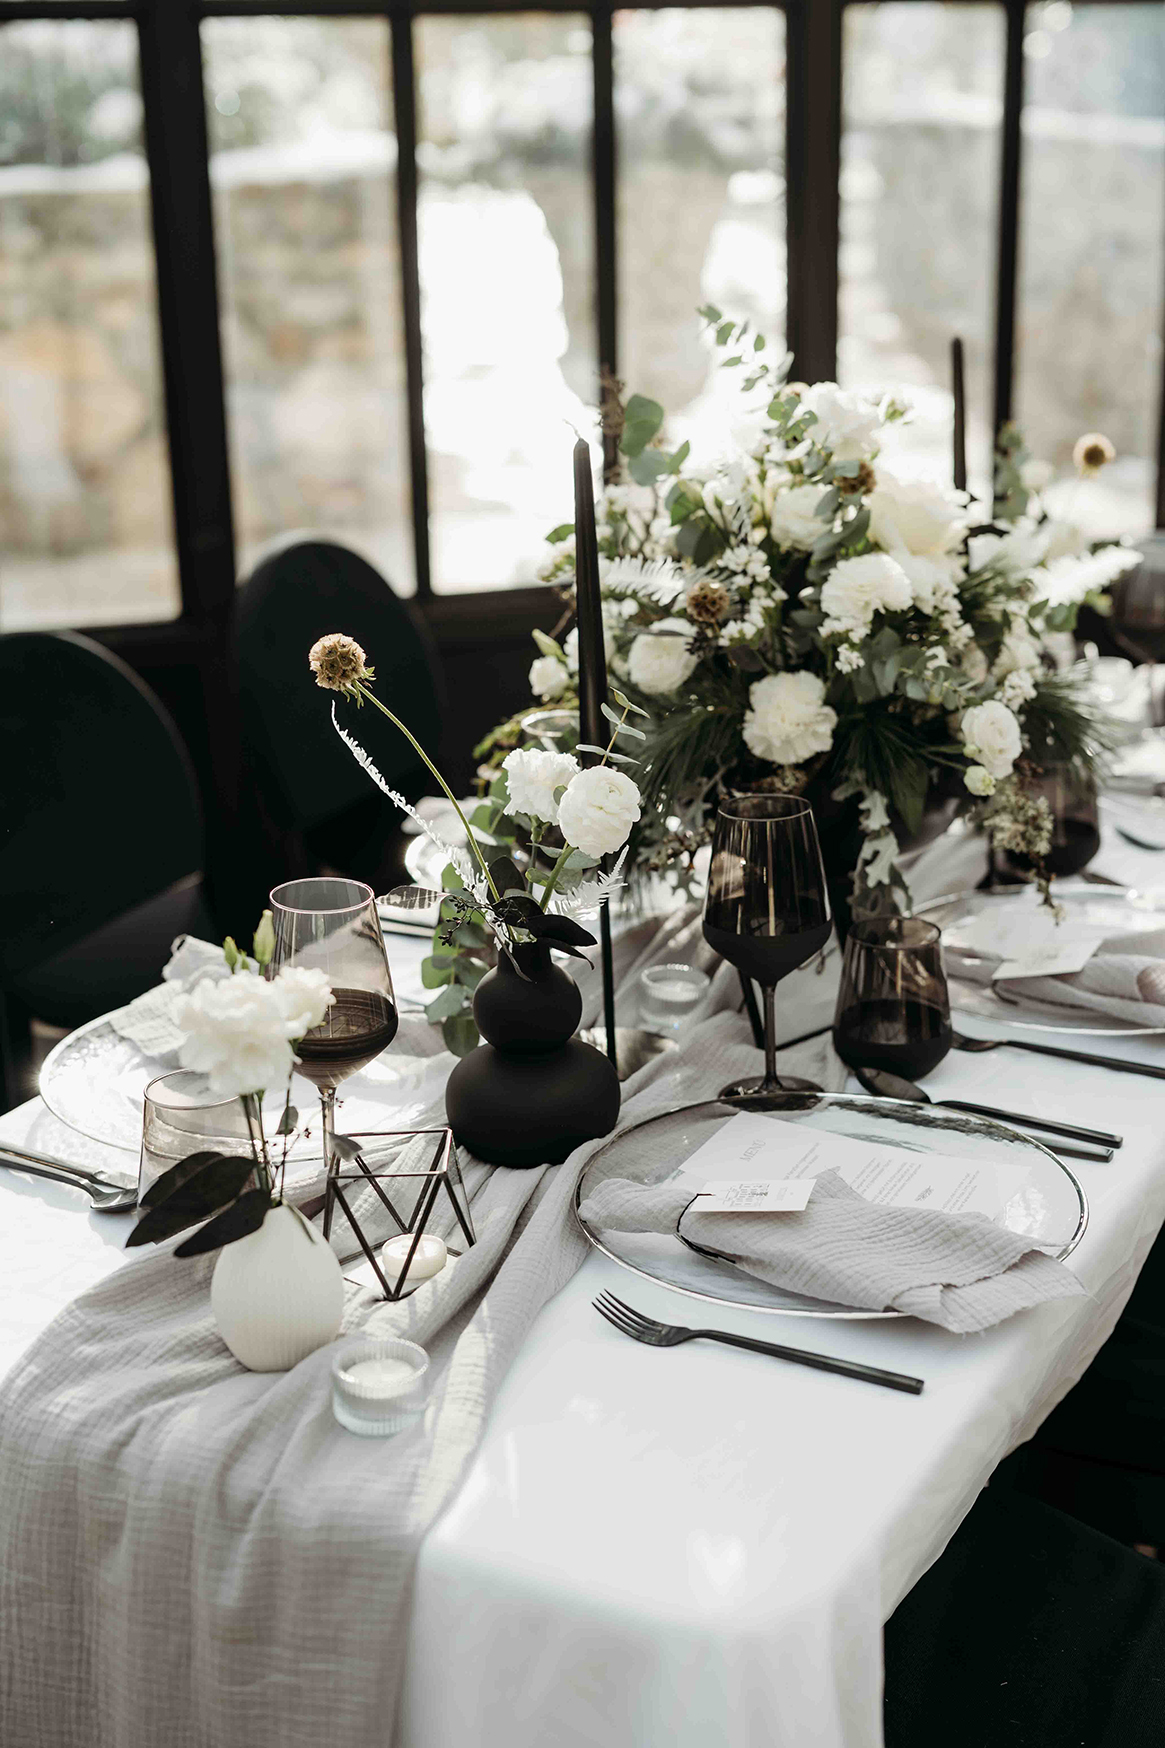 weiße und schwarze Hochzeitstafel, Tisch ist schön gedcket mit schwarzen Gläsern und Besteck, Teller sind in Glasoptik gehalten, ein großer Strauß mit weißen Rosen ziert die Mitte des Tisches